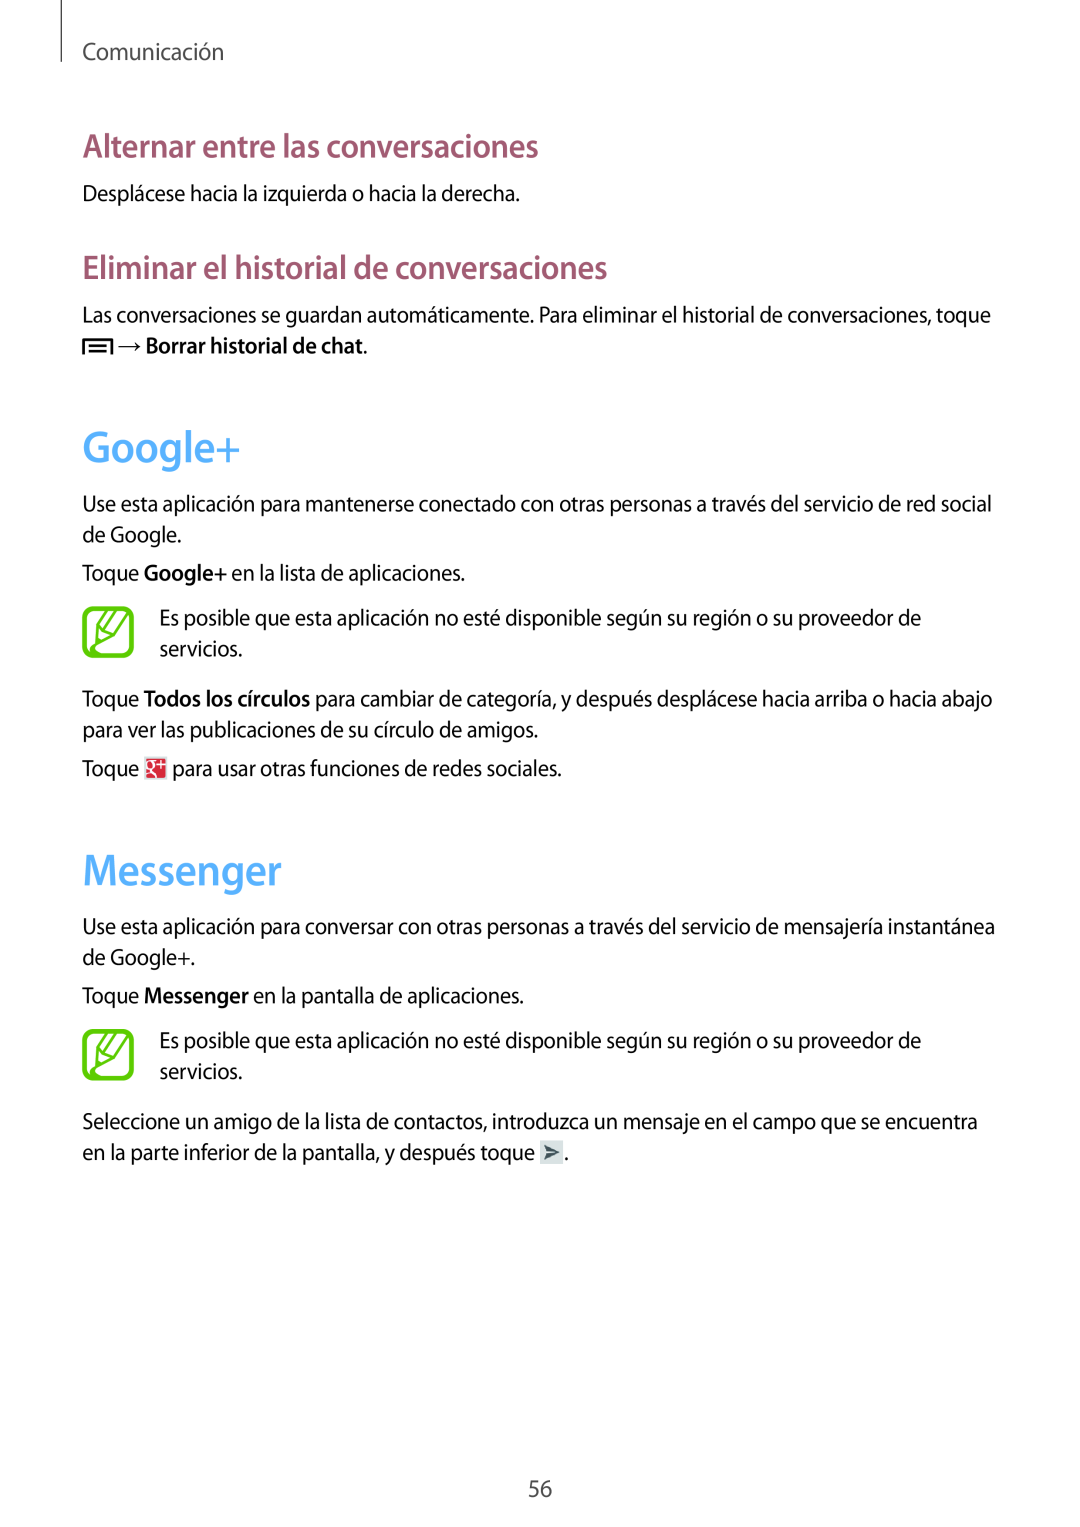 Samsung GT-I8730TAAMEO Google+, Messenger, Alternar entre las conversaciones, Eliminar el historial de conversaciones 